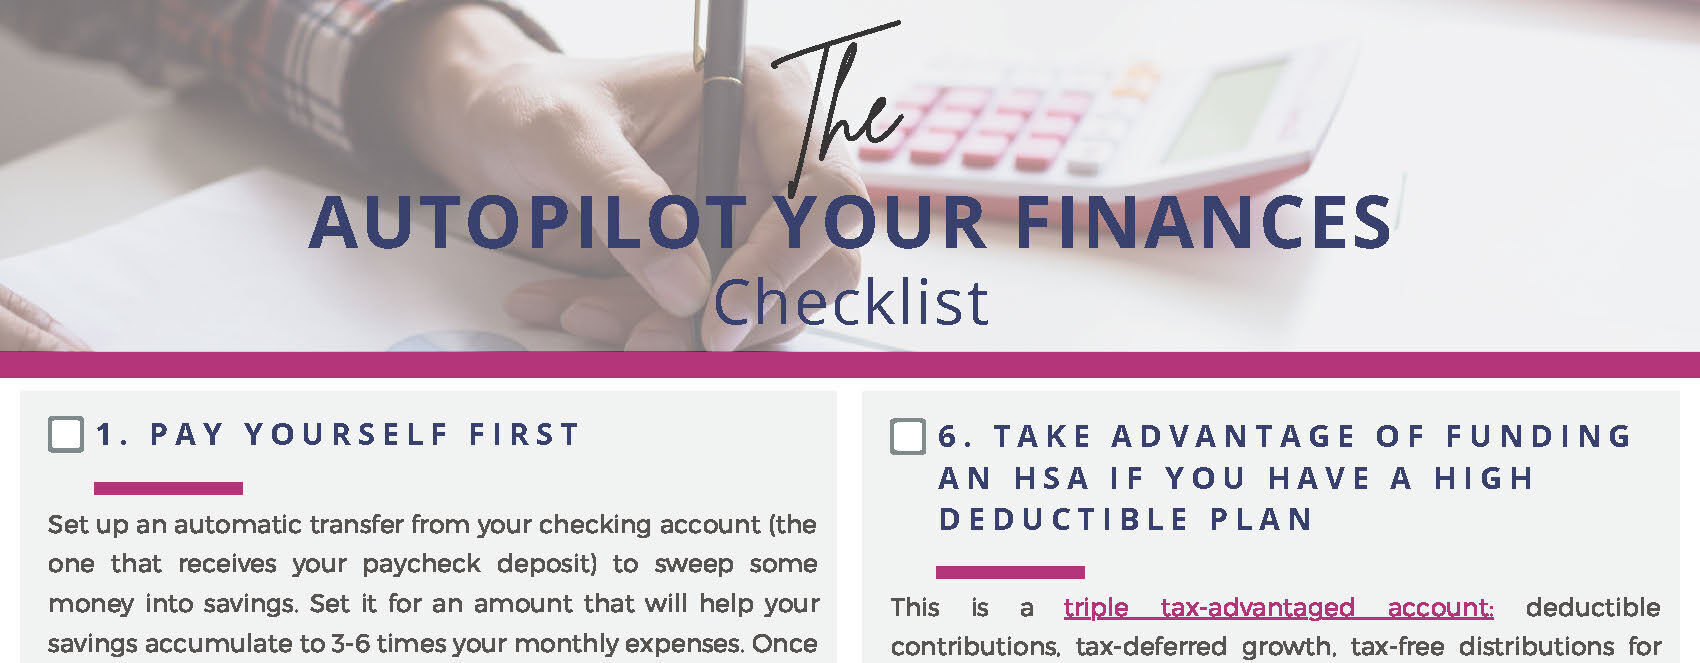 Autopilot Your Finances Checklist Final